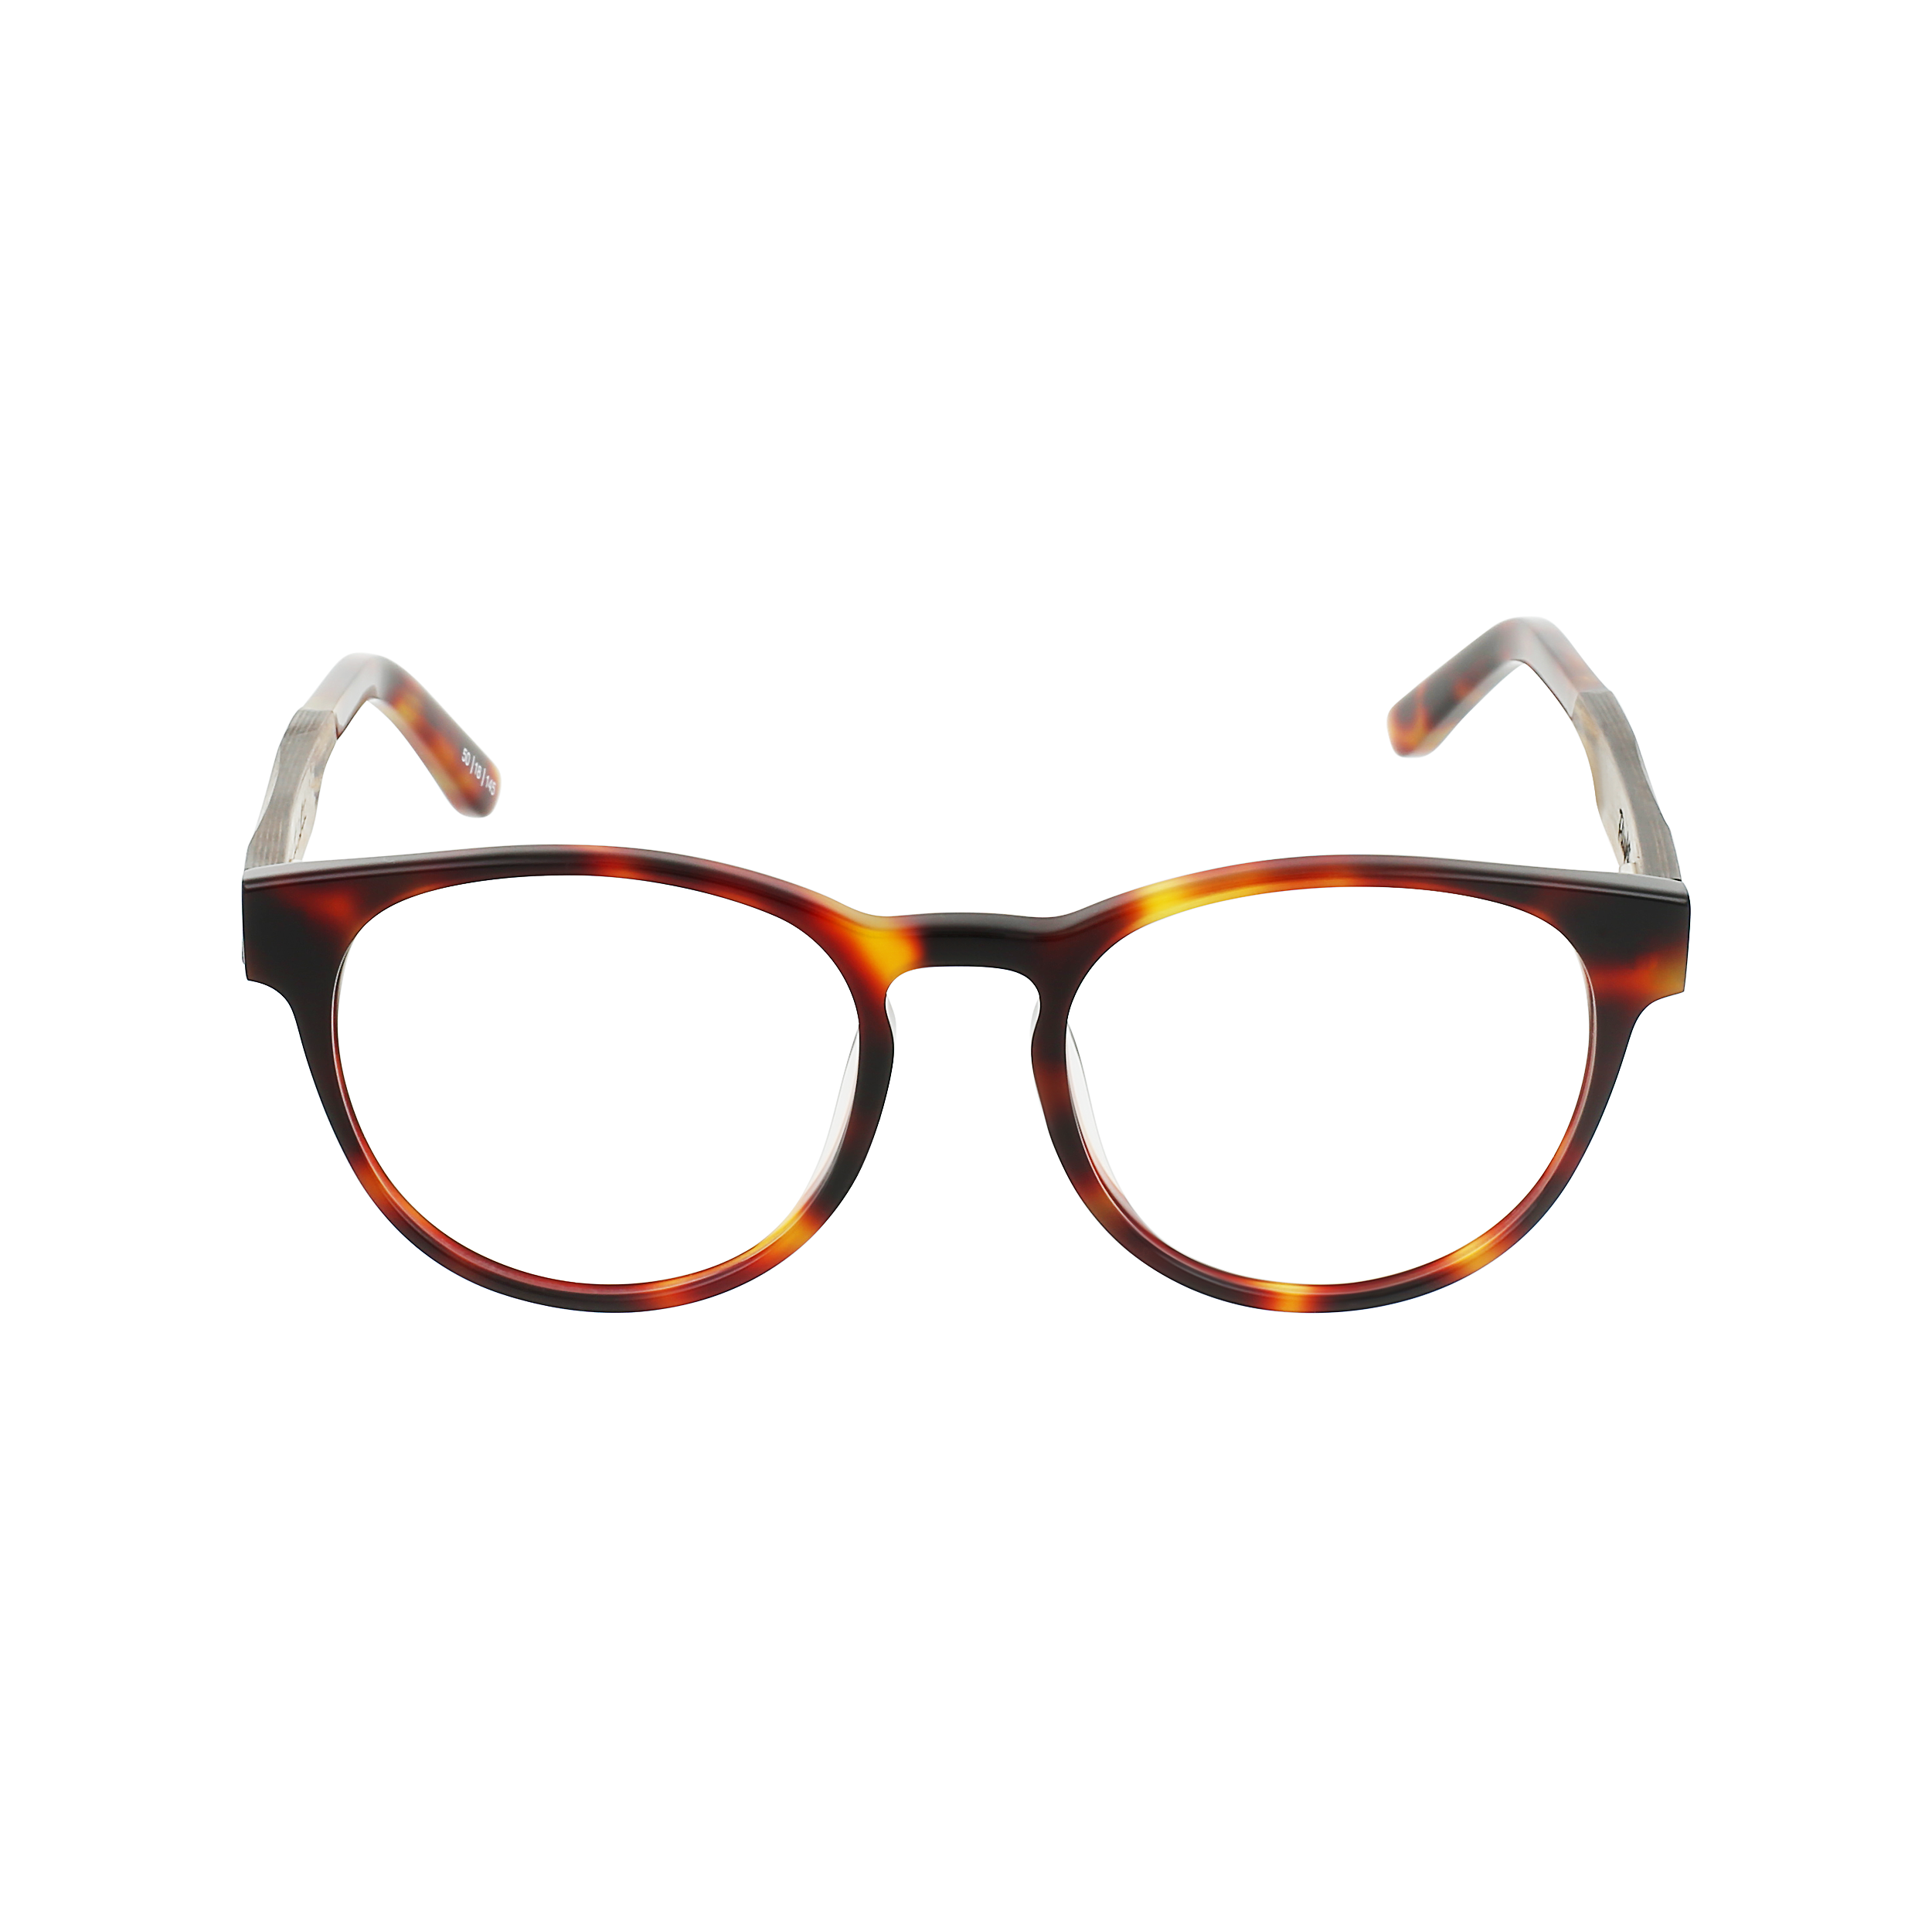 FLIGHT Eyeglasses Frame - Classic Tortoise- Johnny Fly | FLI-CTRT-RX-EBN | | 